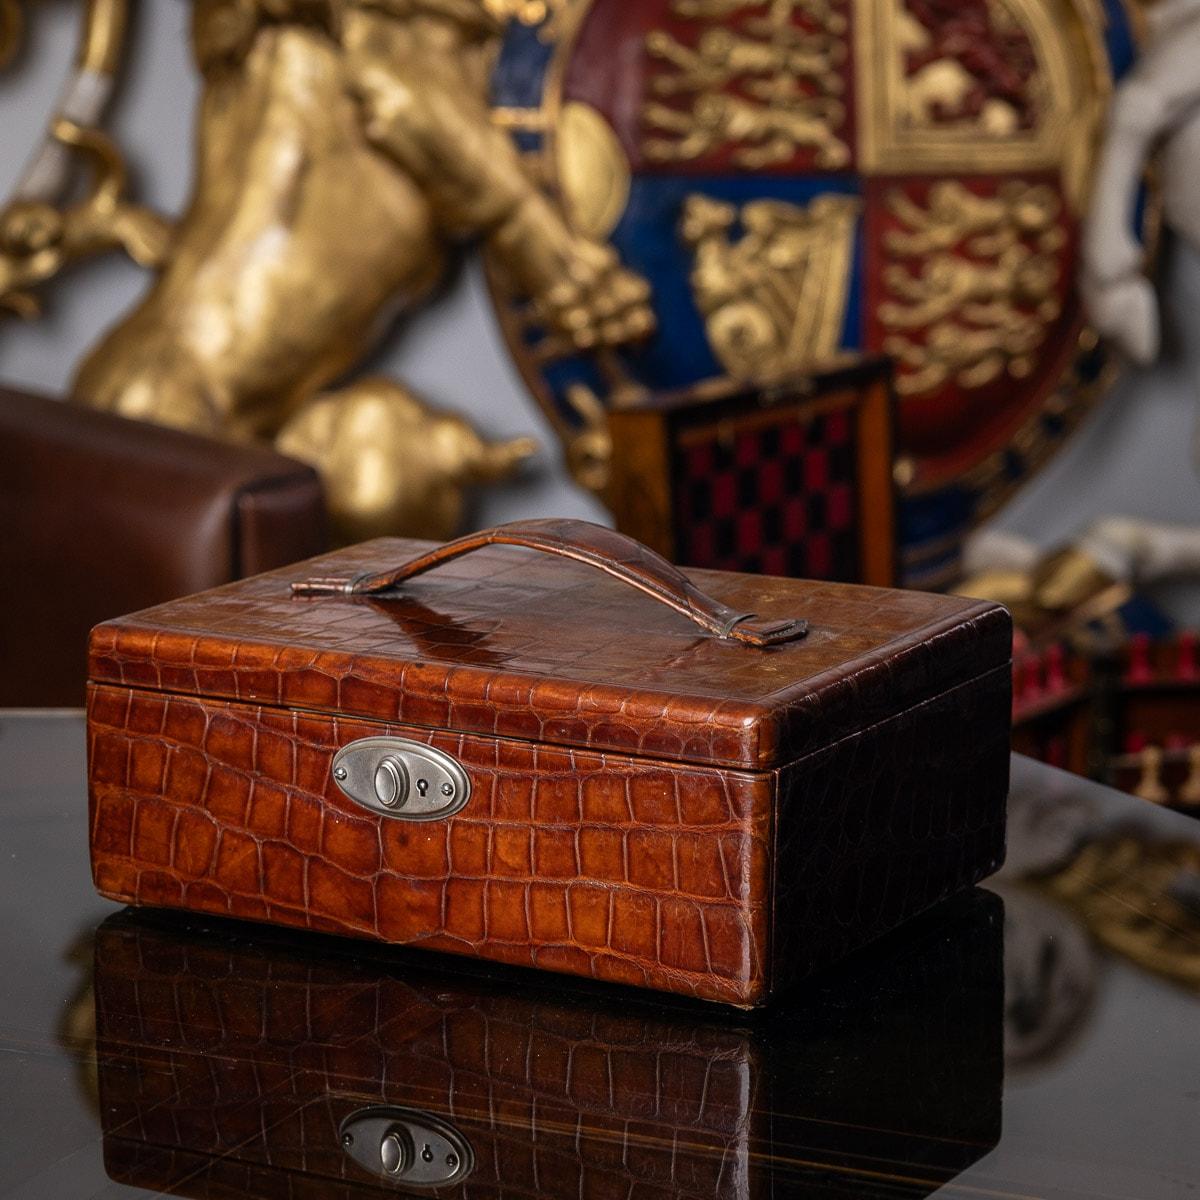 Antike Krokodilleder-Reisetasche aus dem 20. Jahrhundert. Der Koffer verfügt über einen Leder-Trageriemen am Deckel und einen Verschlussmechanismus an der Vorderseite. Das Innere ist mit weichem Wildleder ausgekleidet und hat ein herausnehmbares